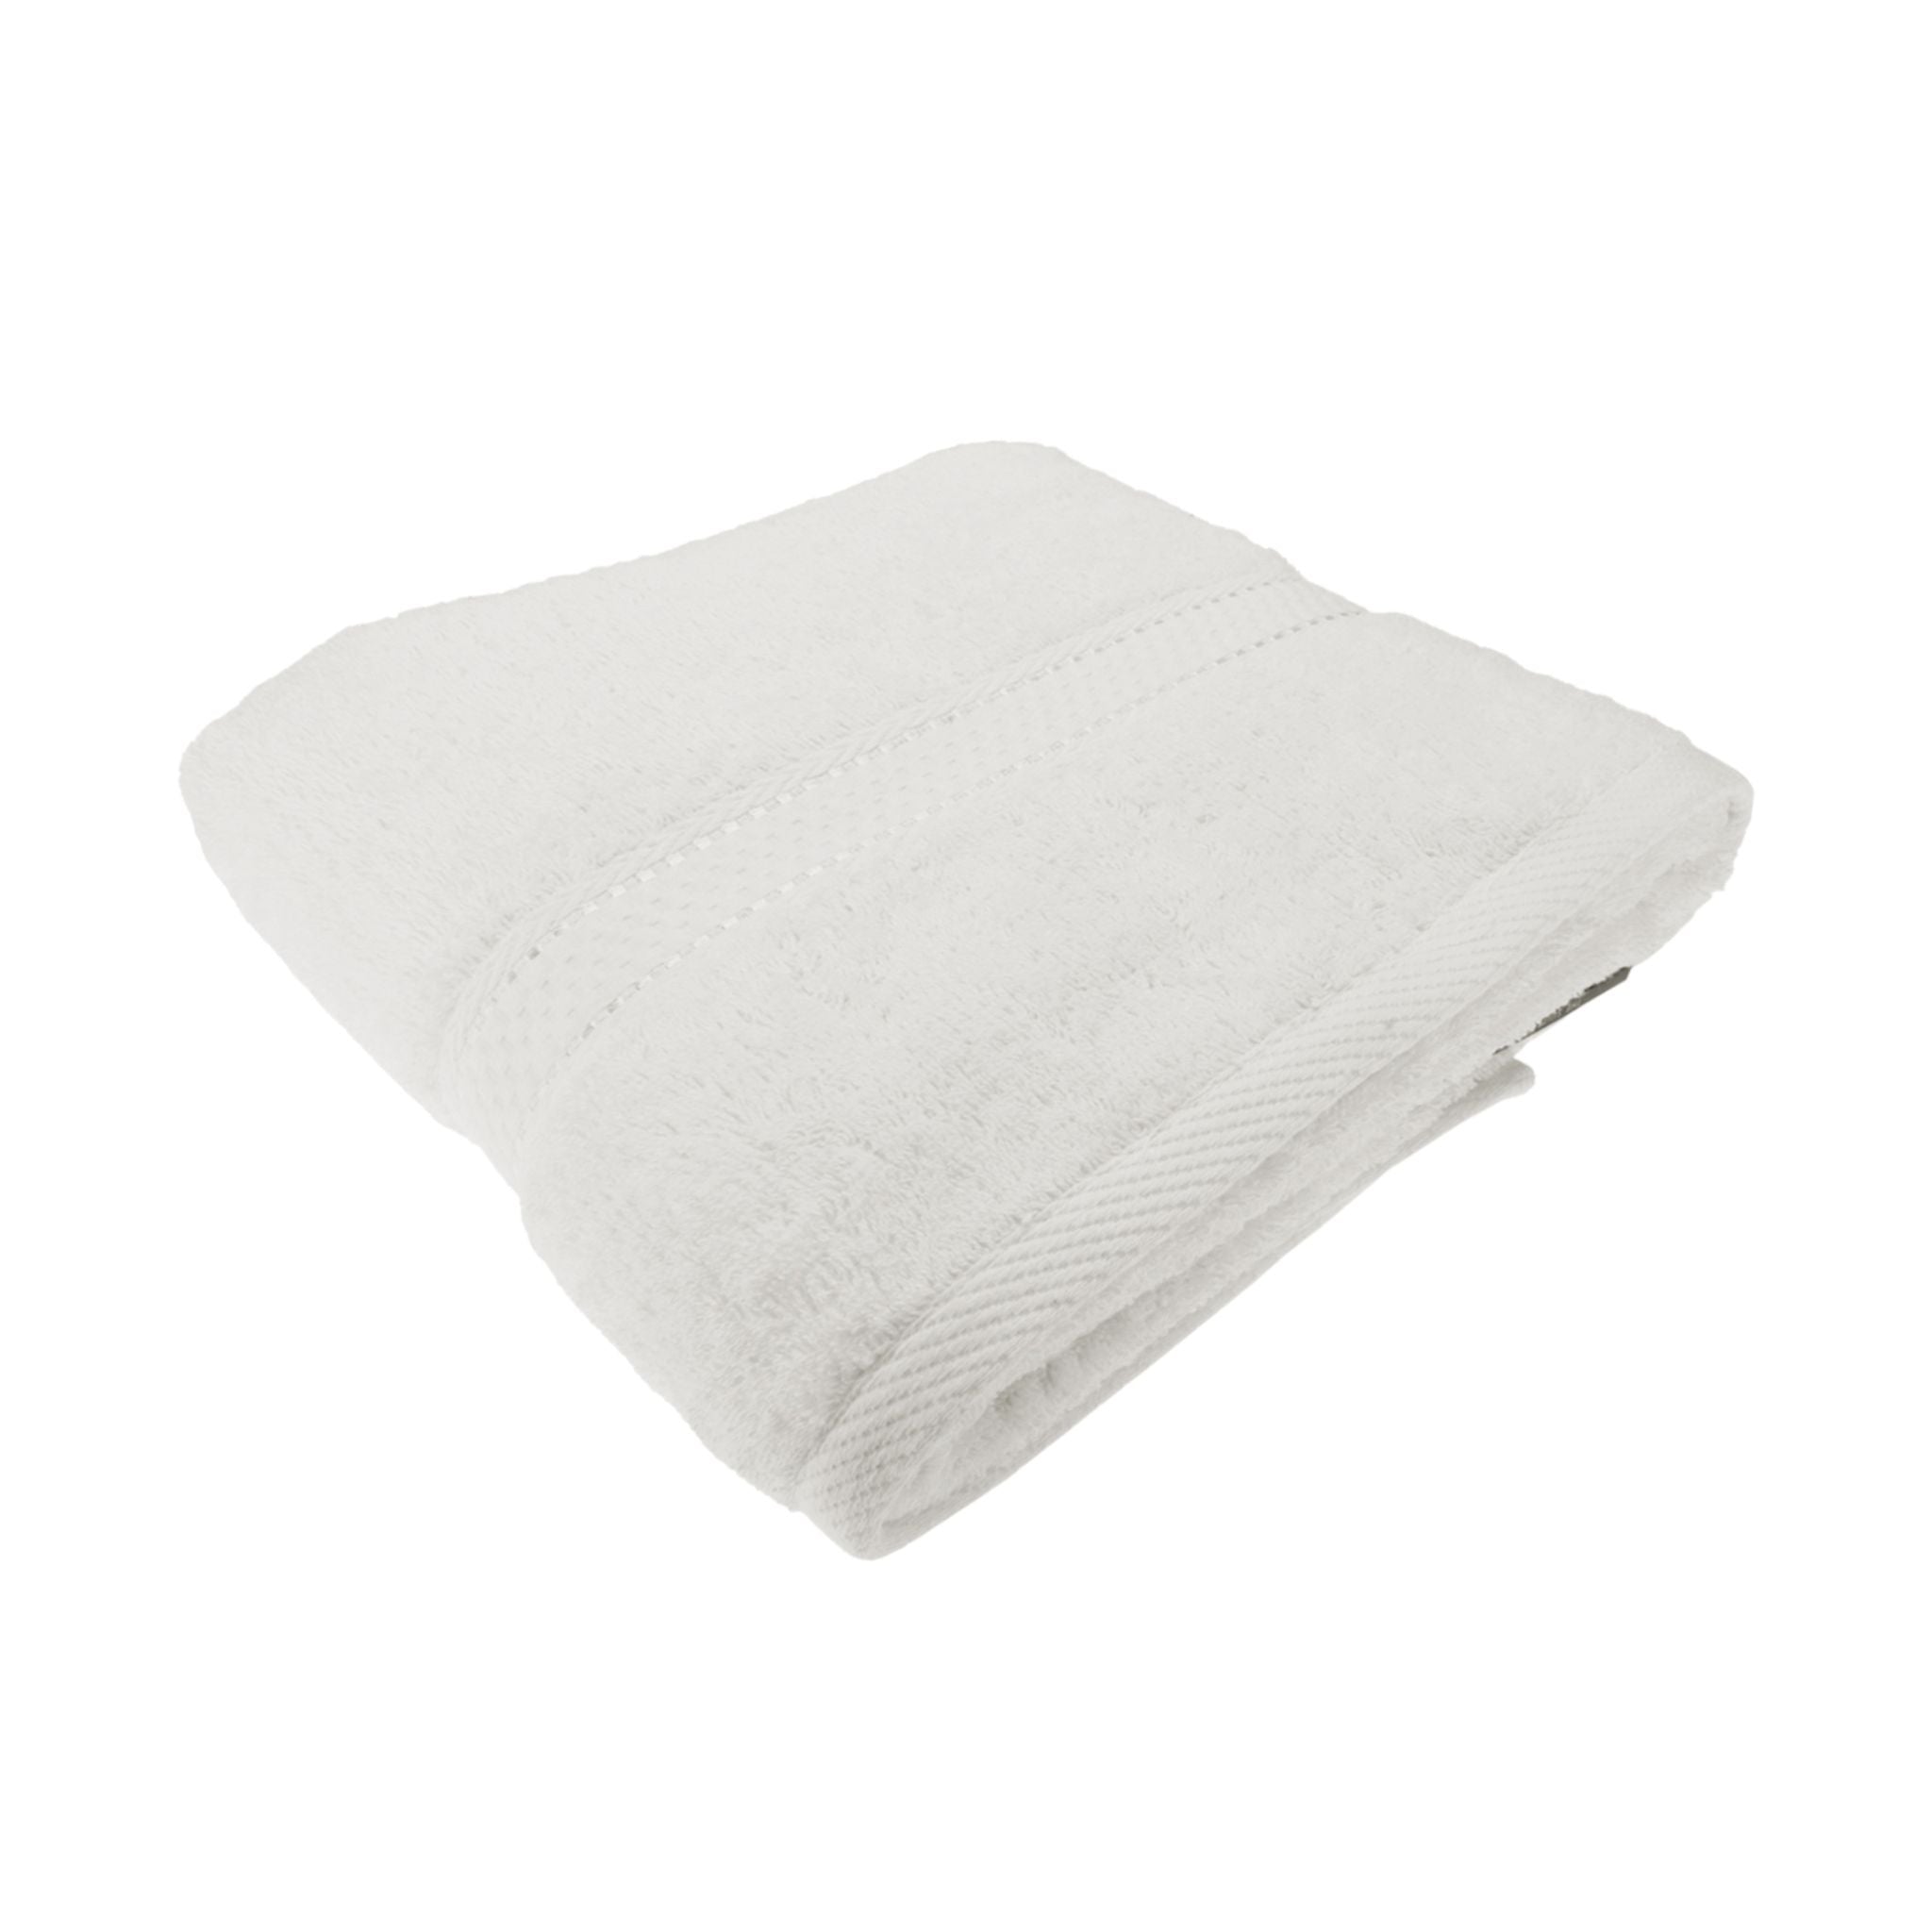 Charles Millen Suite Collection, Classique,  Bath Towel, 70 x 140cm - Cream